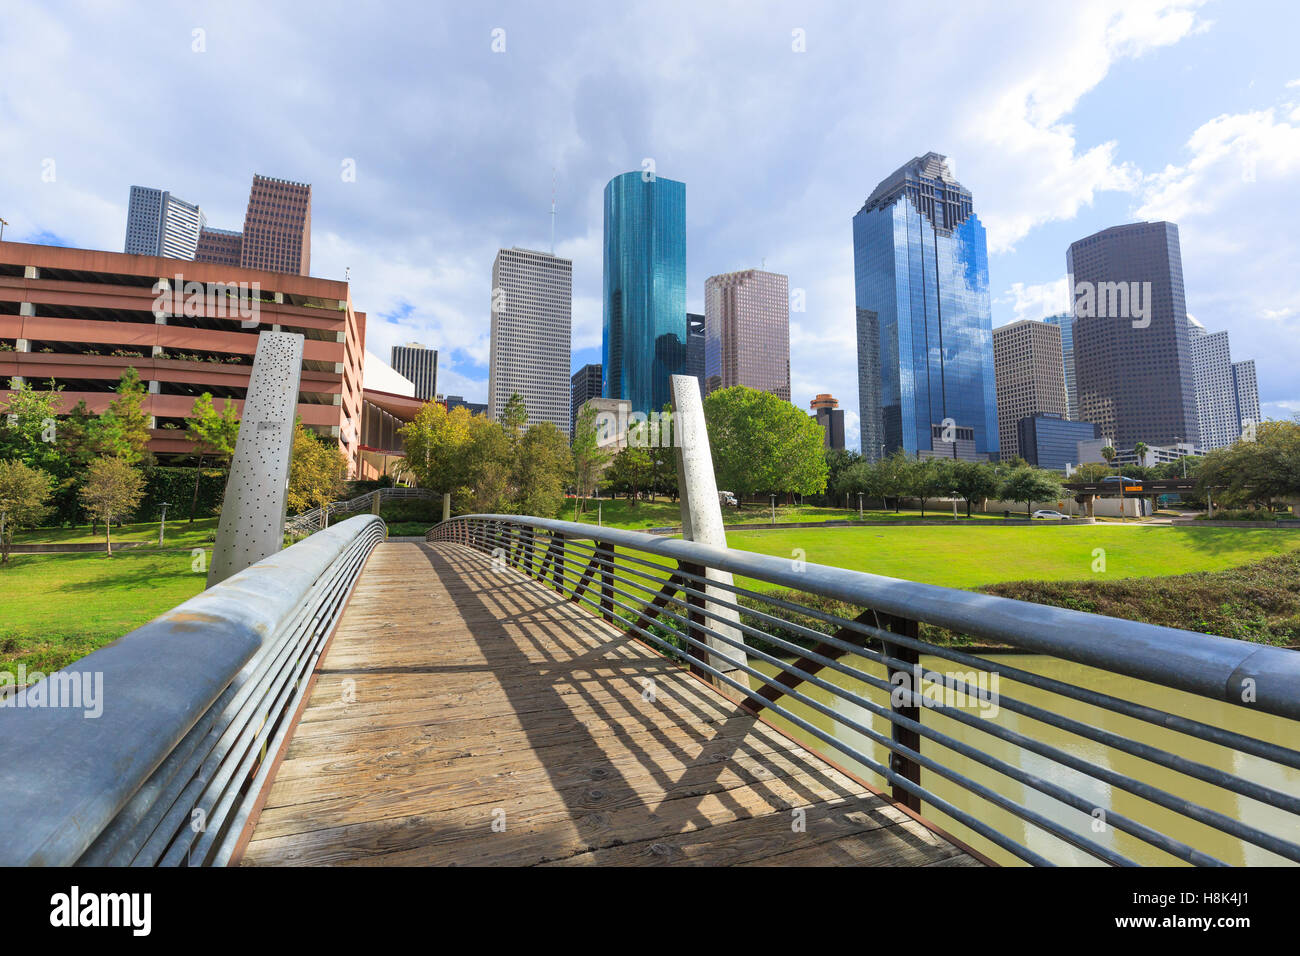 Downtown city of Houston, Texas Stock Photo